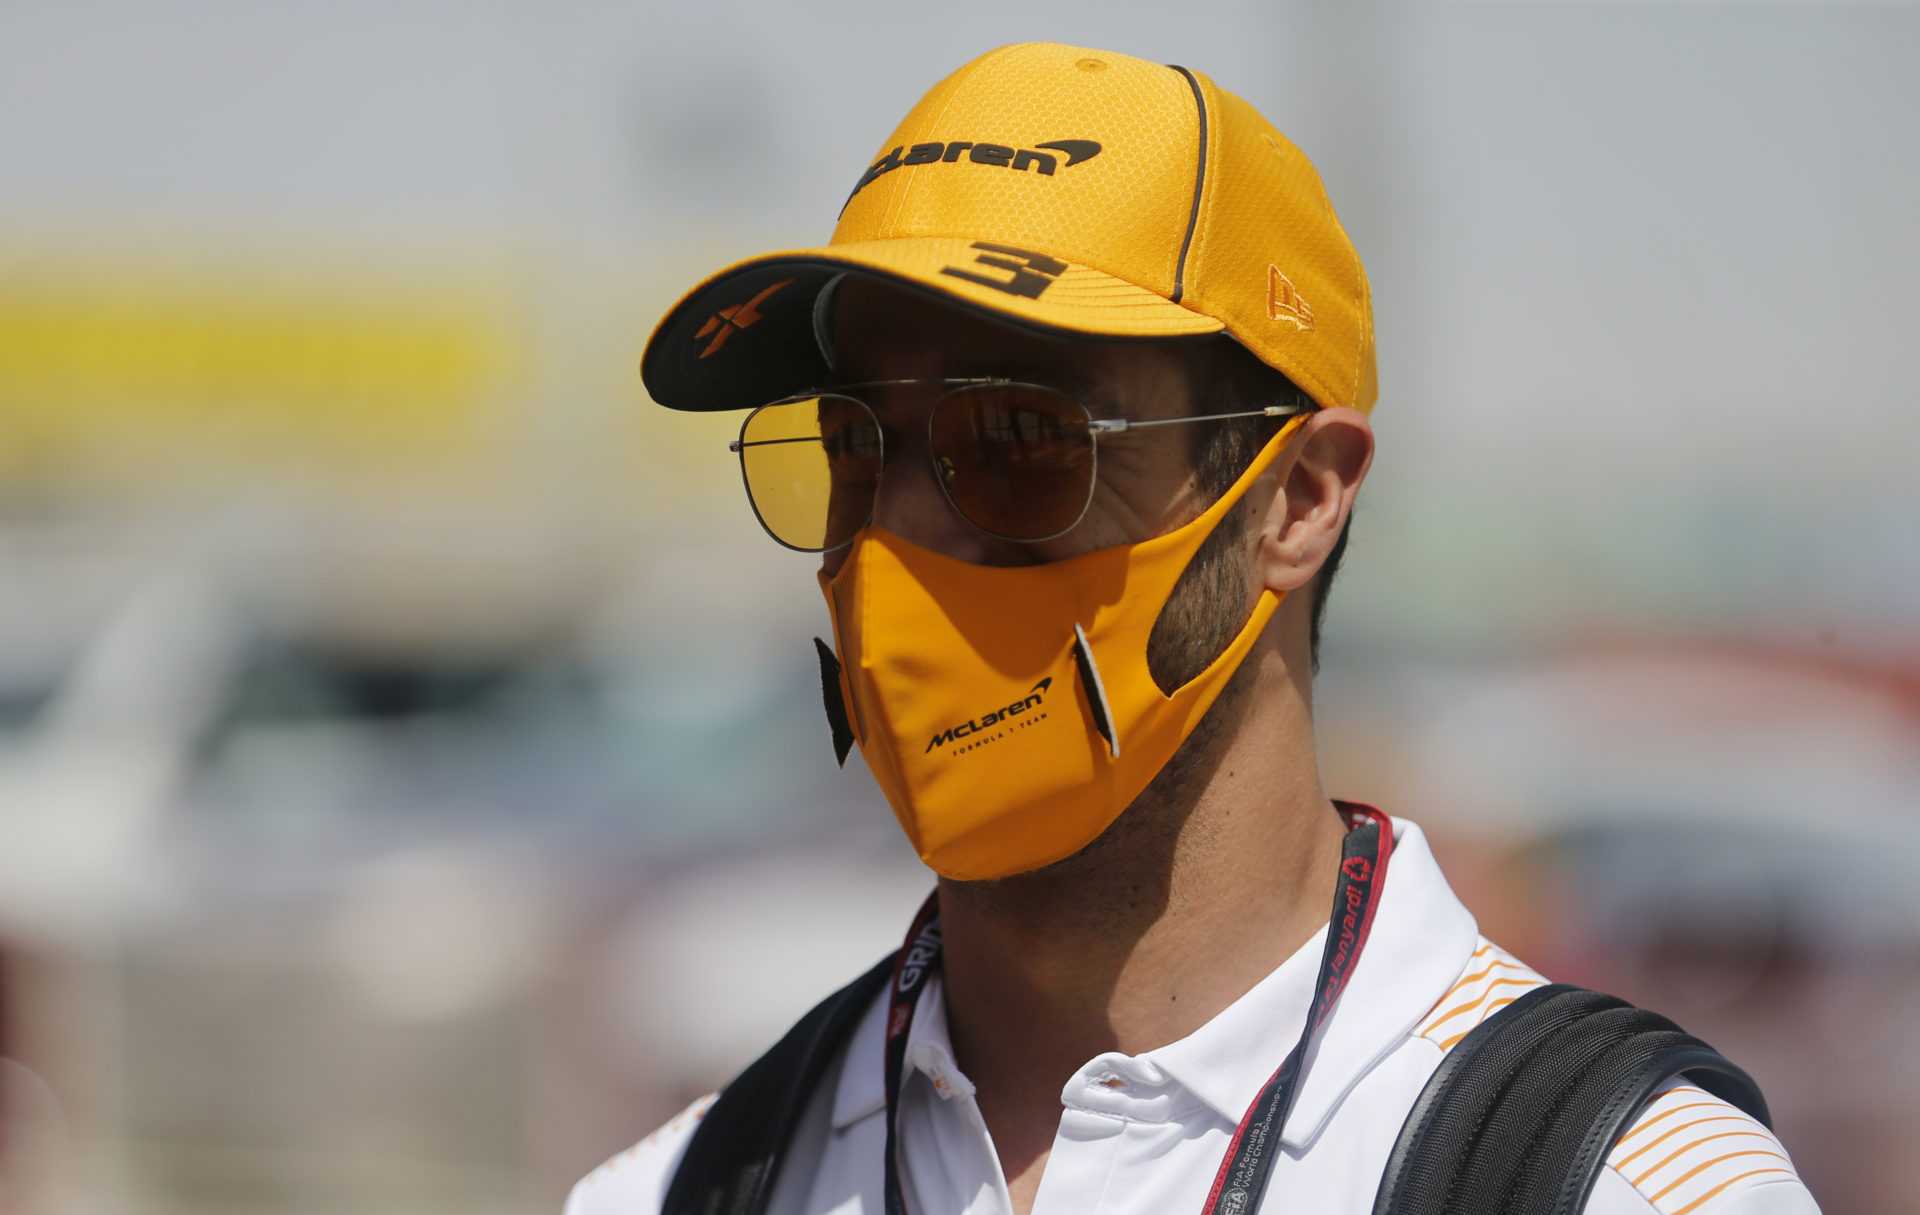 Daniel Ricciardo devant le GP de Bahreïn